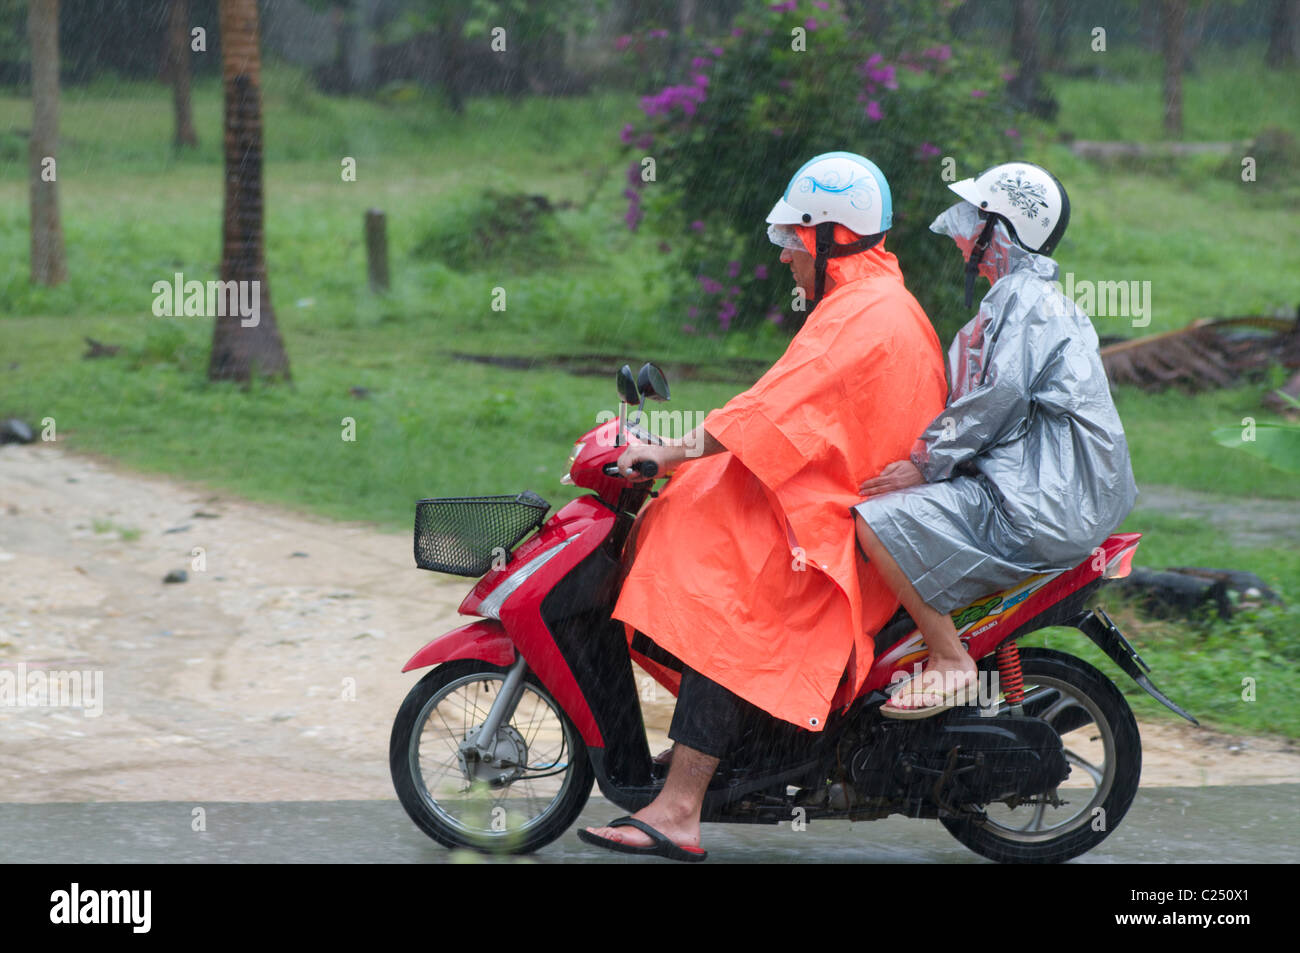 Touristen in Regenmäntel auf einem Motorrad Stockfoto